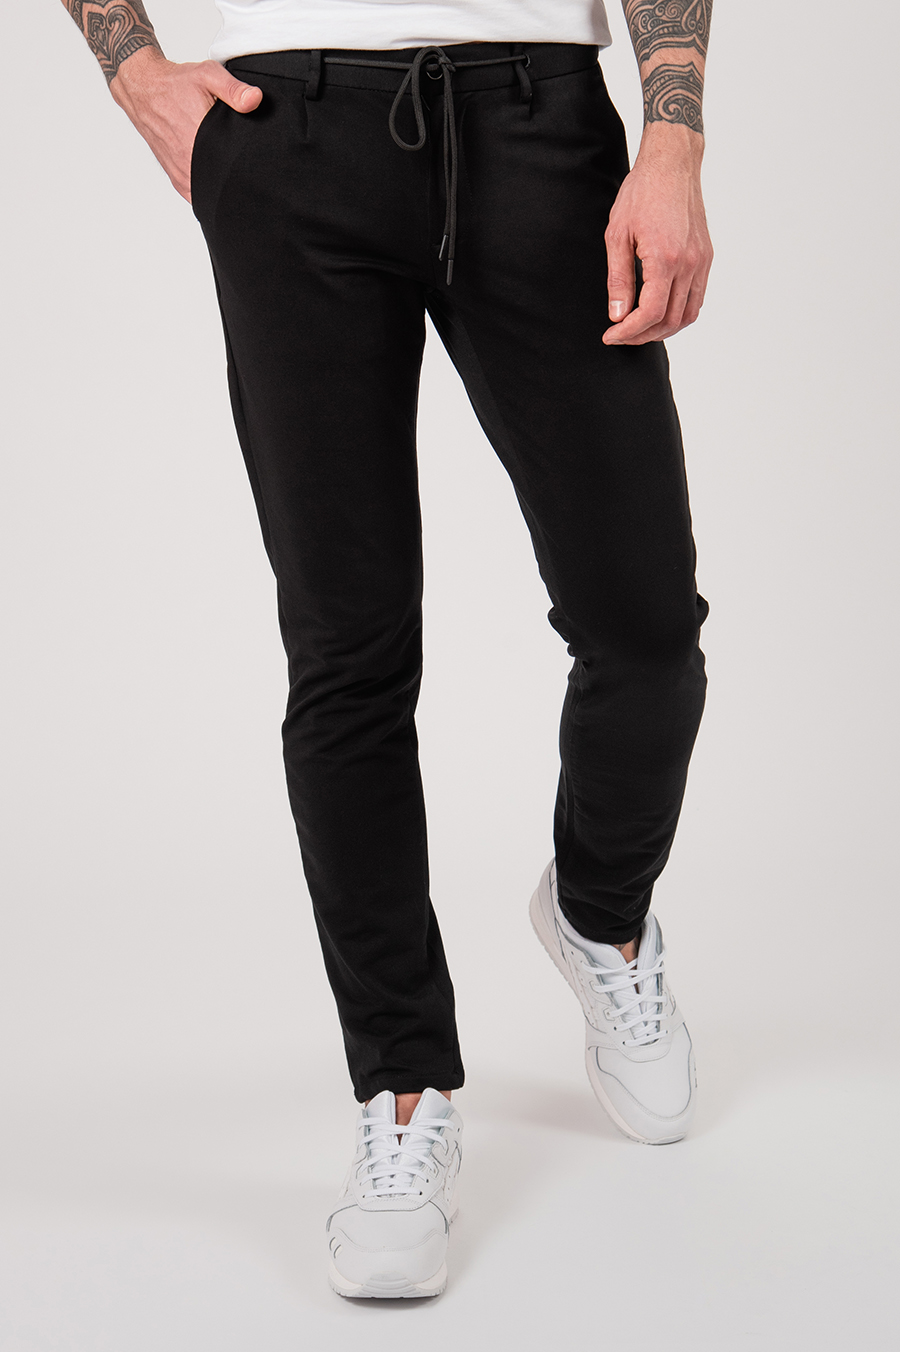 Мужские чёрные casual-брюки на шнурке. Арт.:6-2150-2 – купить в магазинемужской одежды Smartcasuals